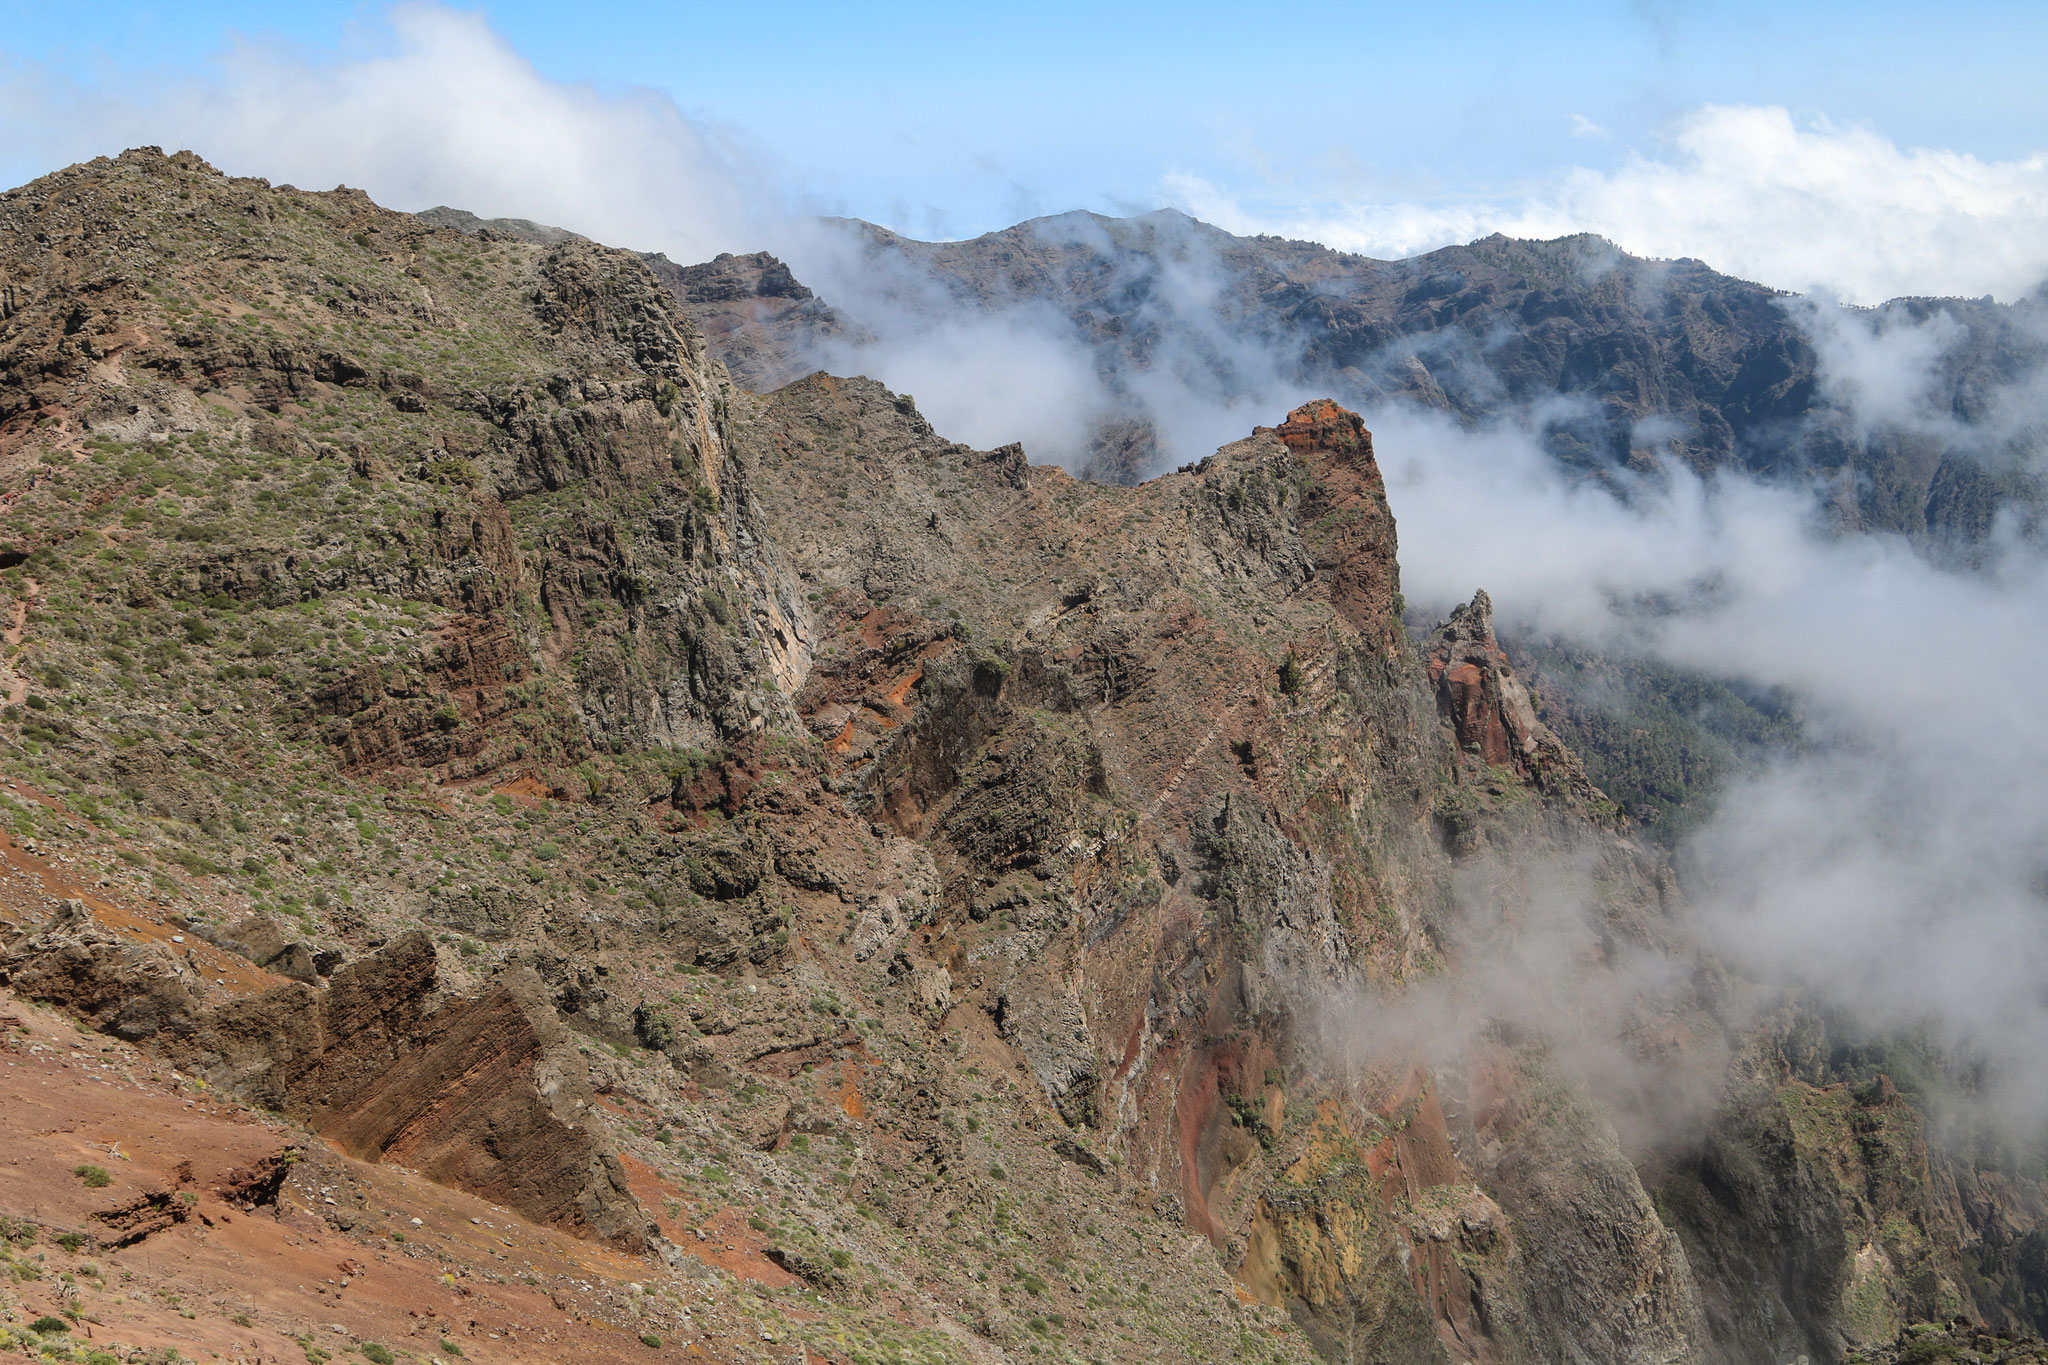 Wanderung am Kraterrand vom Roque de las Muchachos zum Pass Dellogada de Franceses